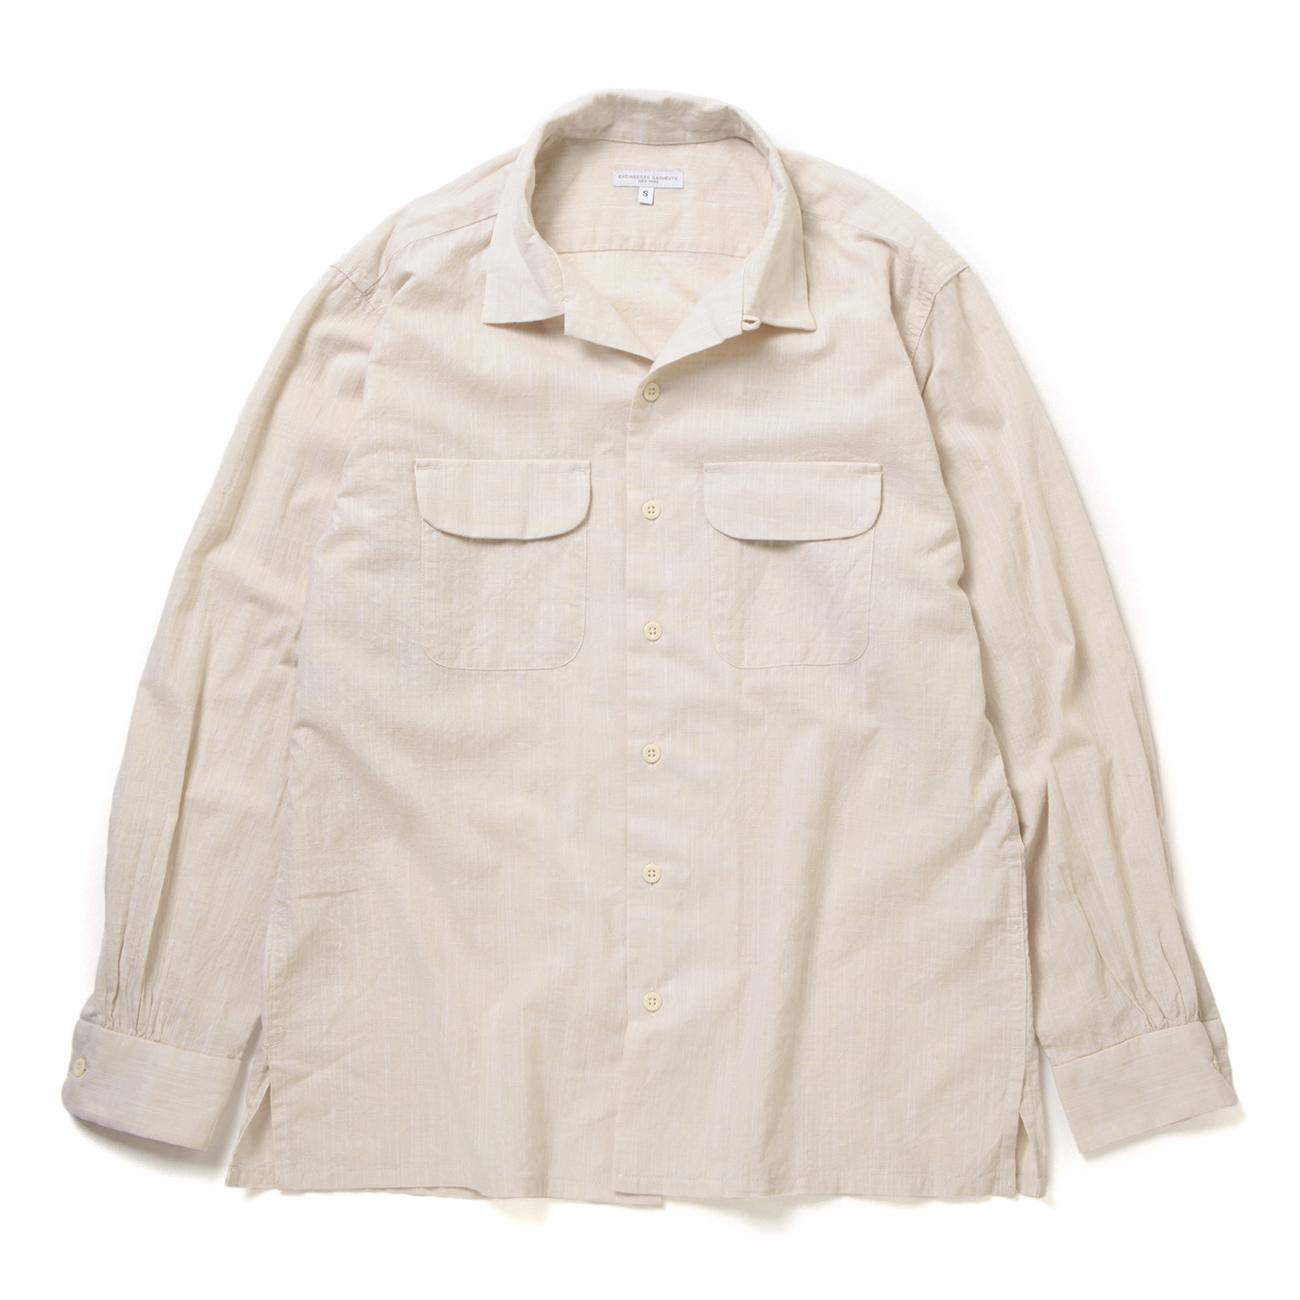 【未使用品】Engineered Garments Classic Shirtオープンカラーシャツ